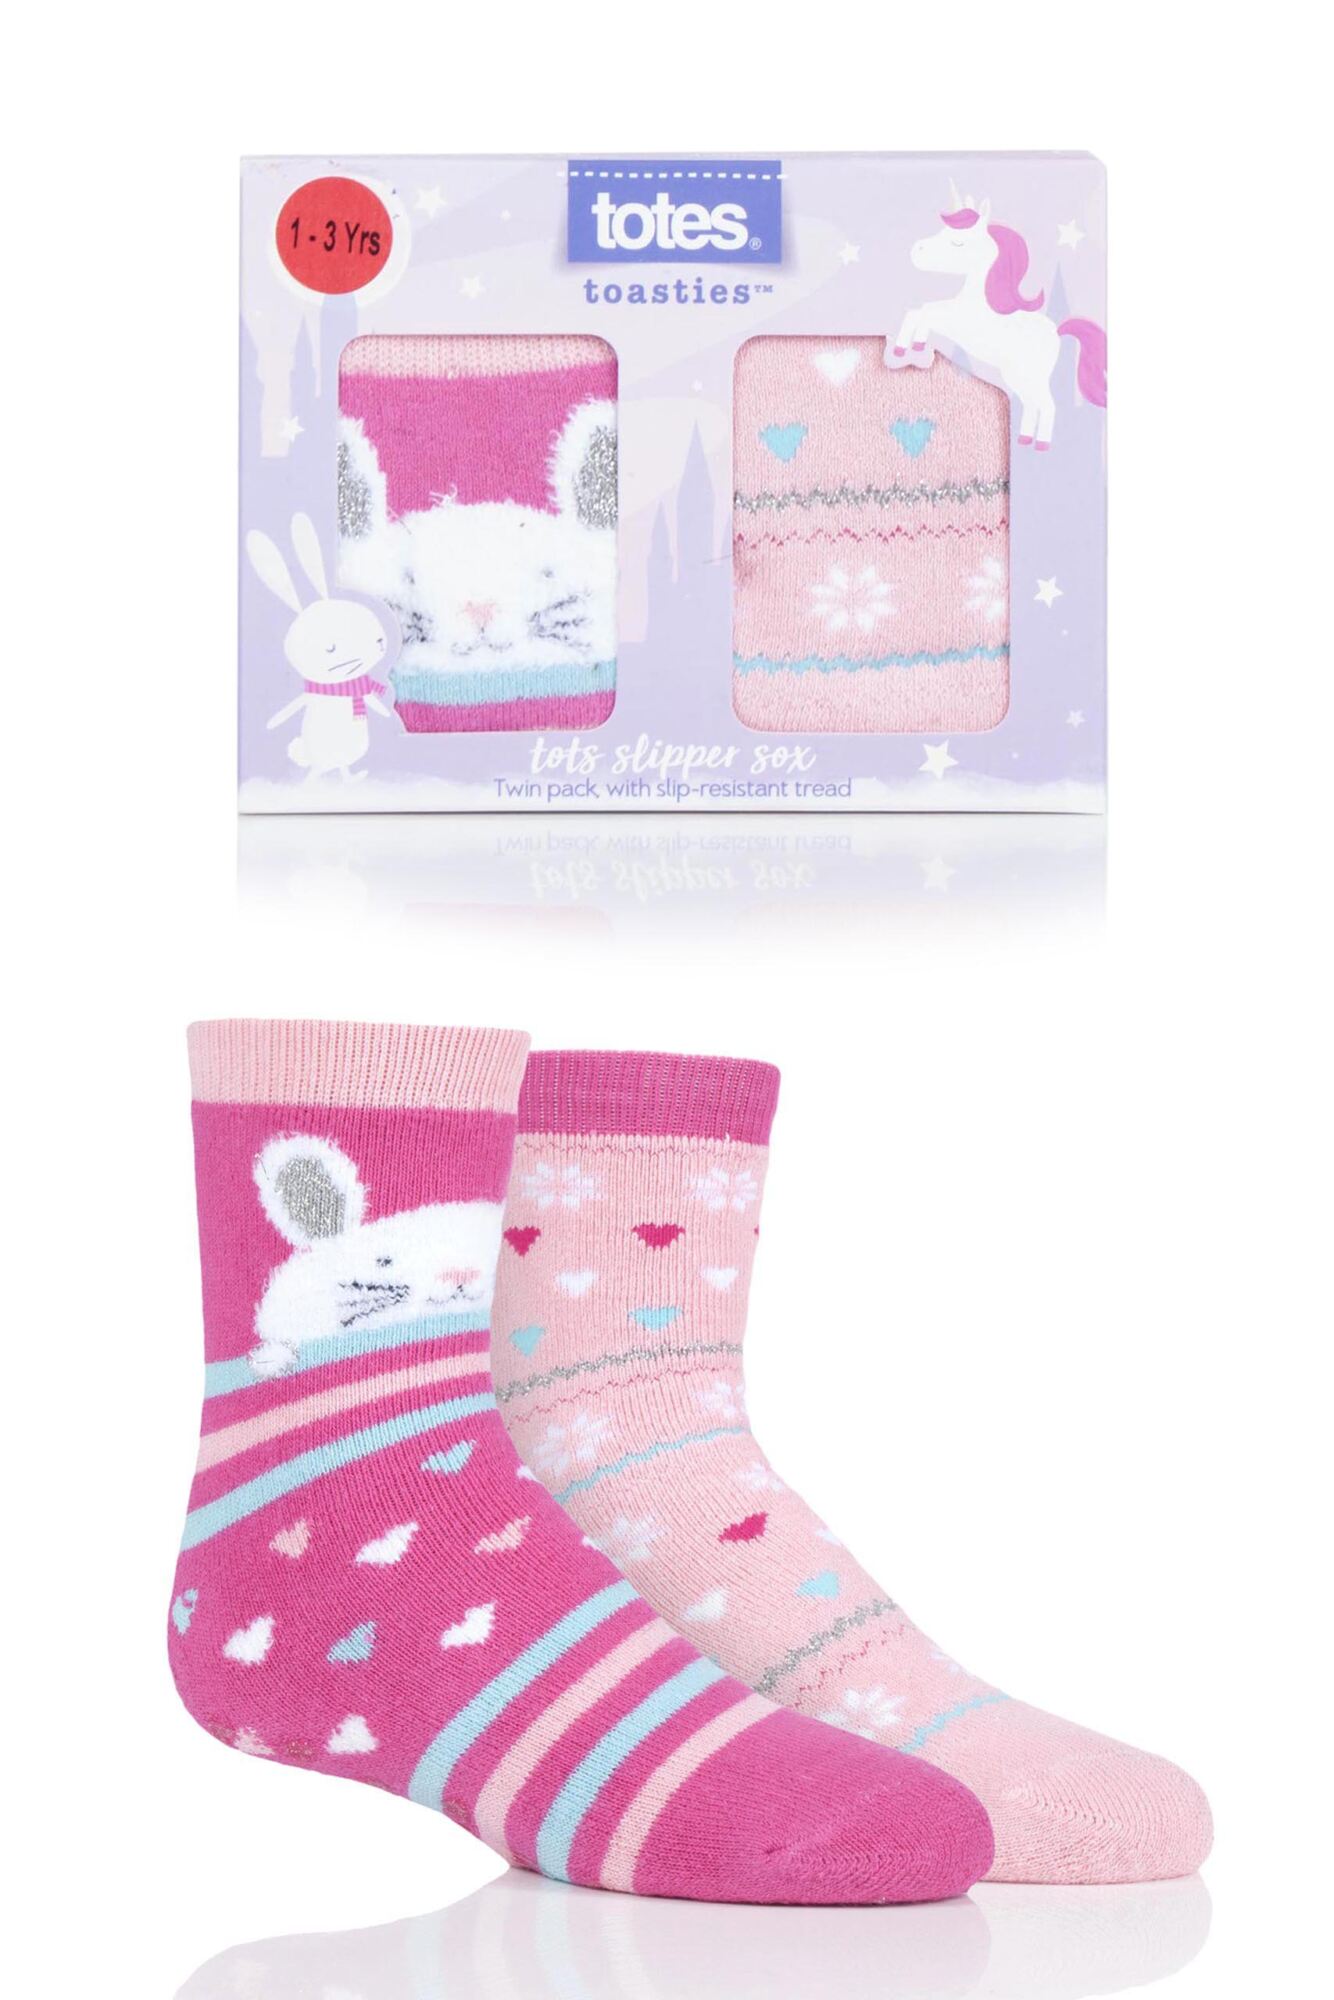 2 Pair Tots Originals Novelty Slipper Socks Girls - Totes